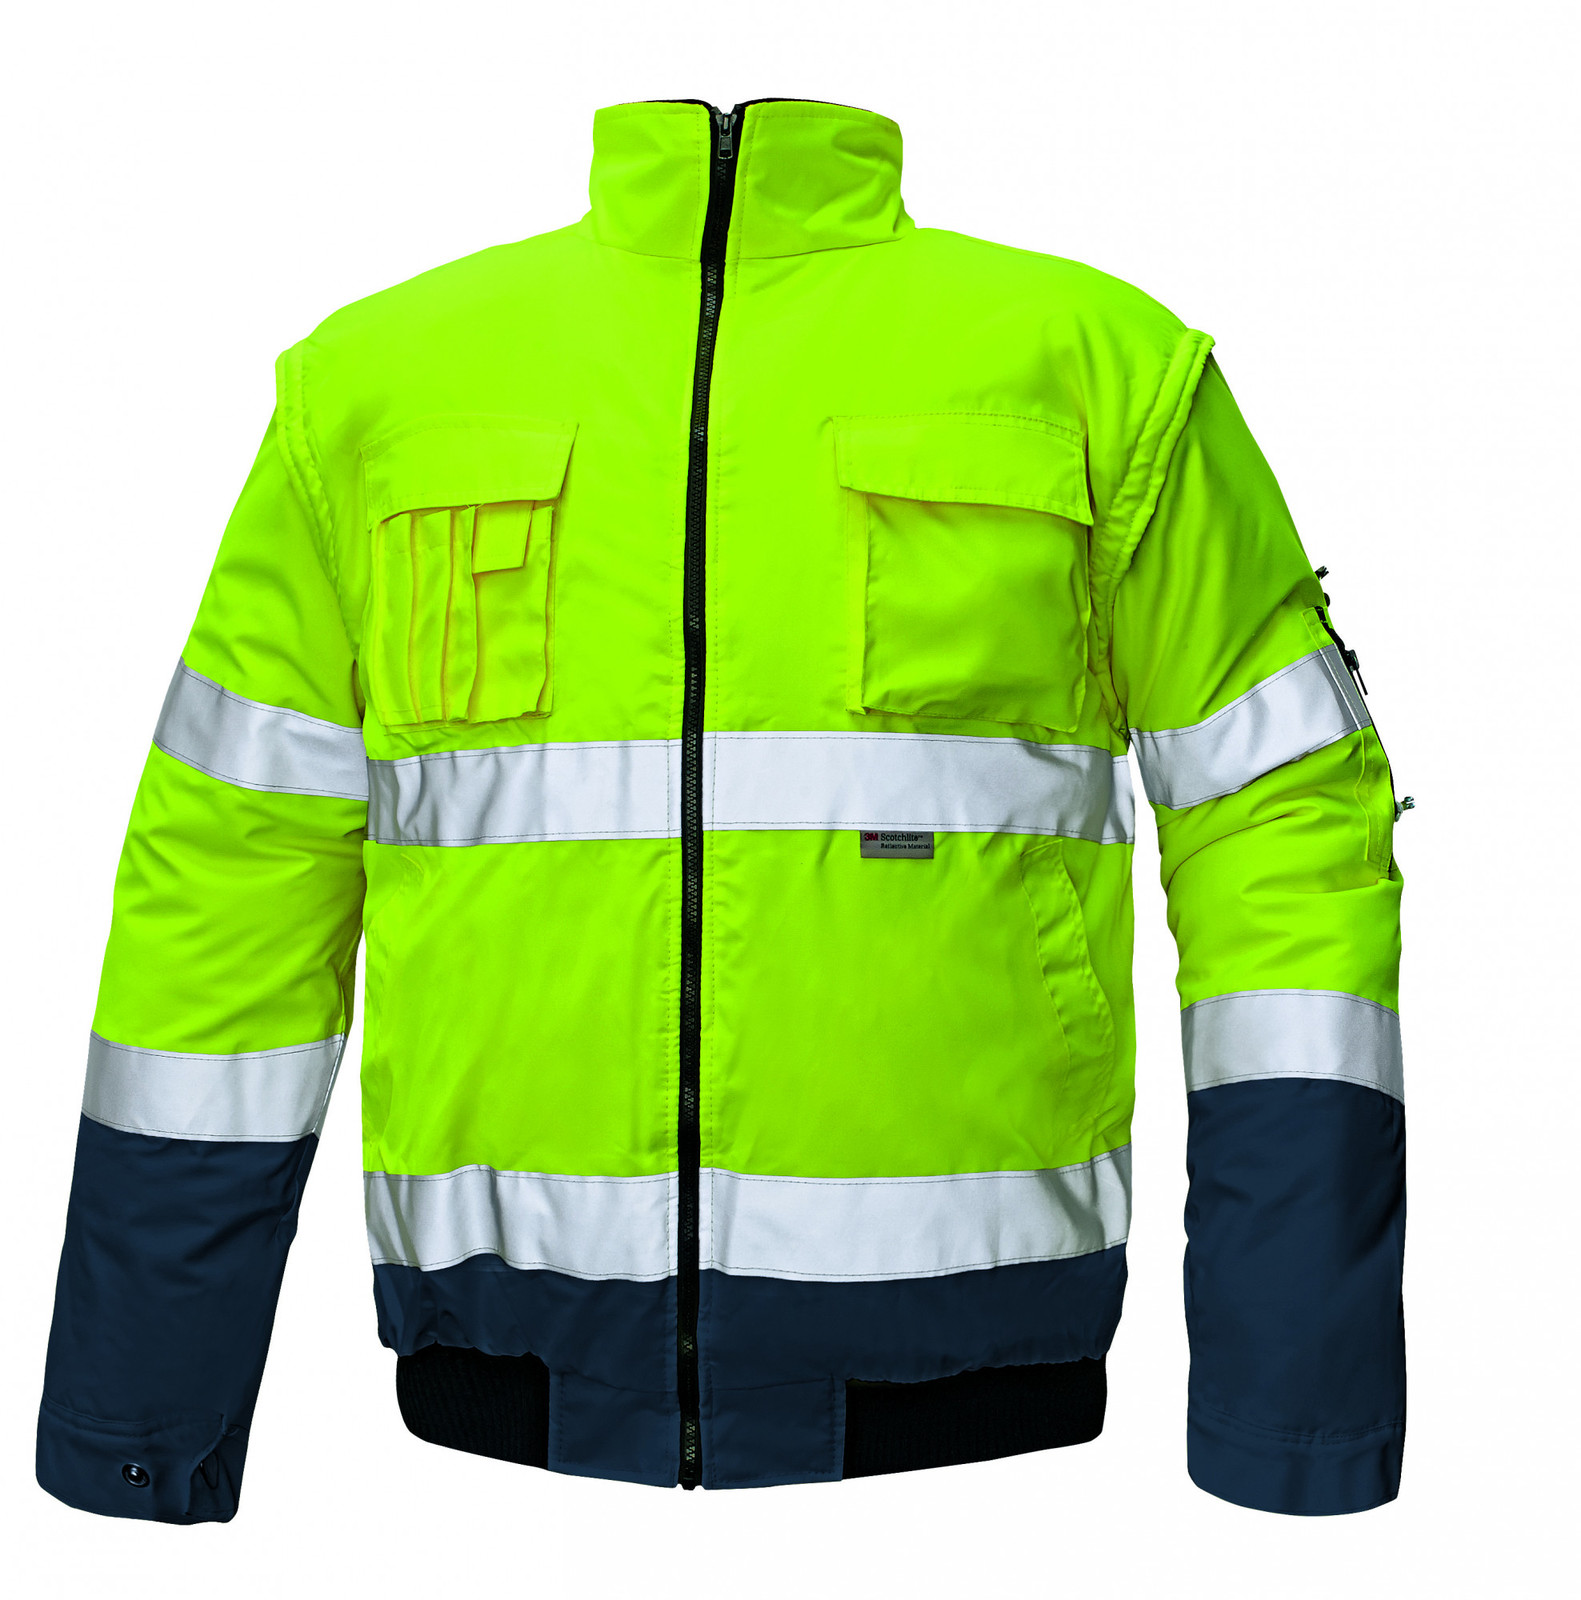 Zimná nepremokavá reflexná bunda Clovelly 2v1 - veľkosť: 3XL, farba: žltá/navy